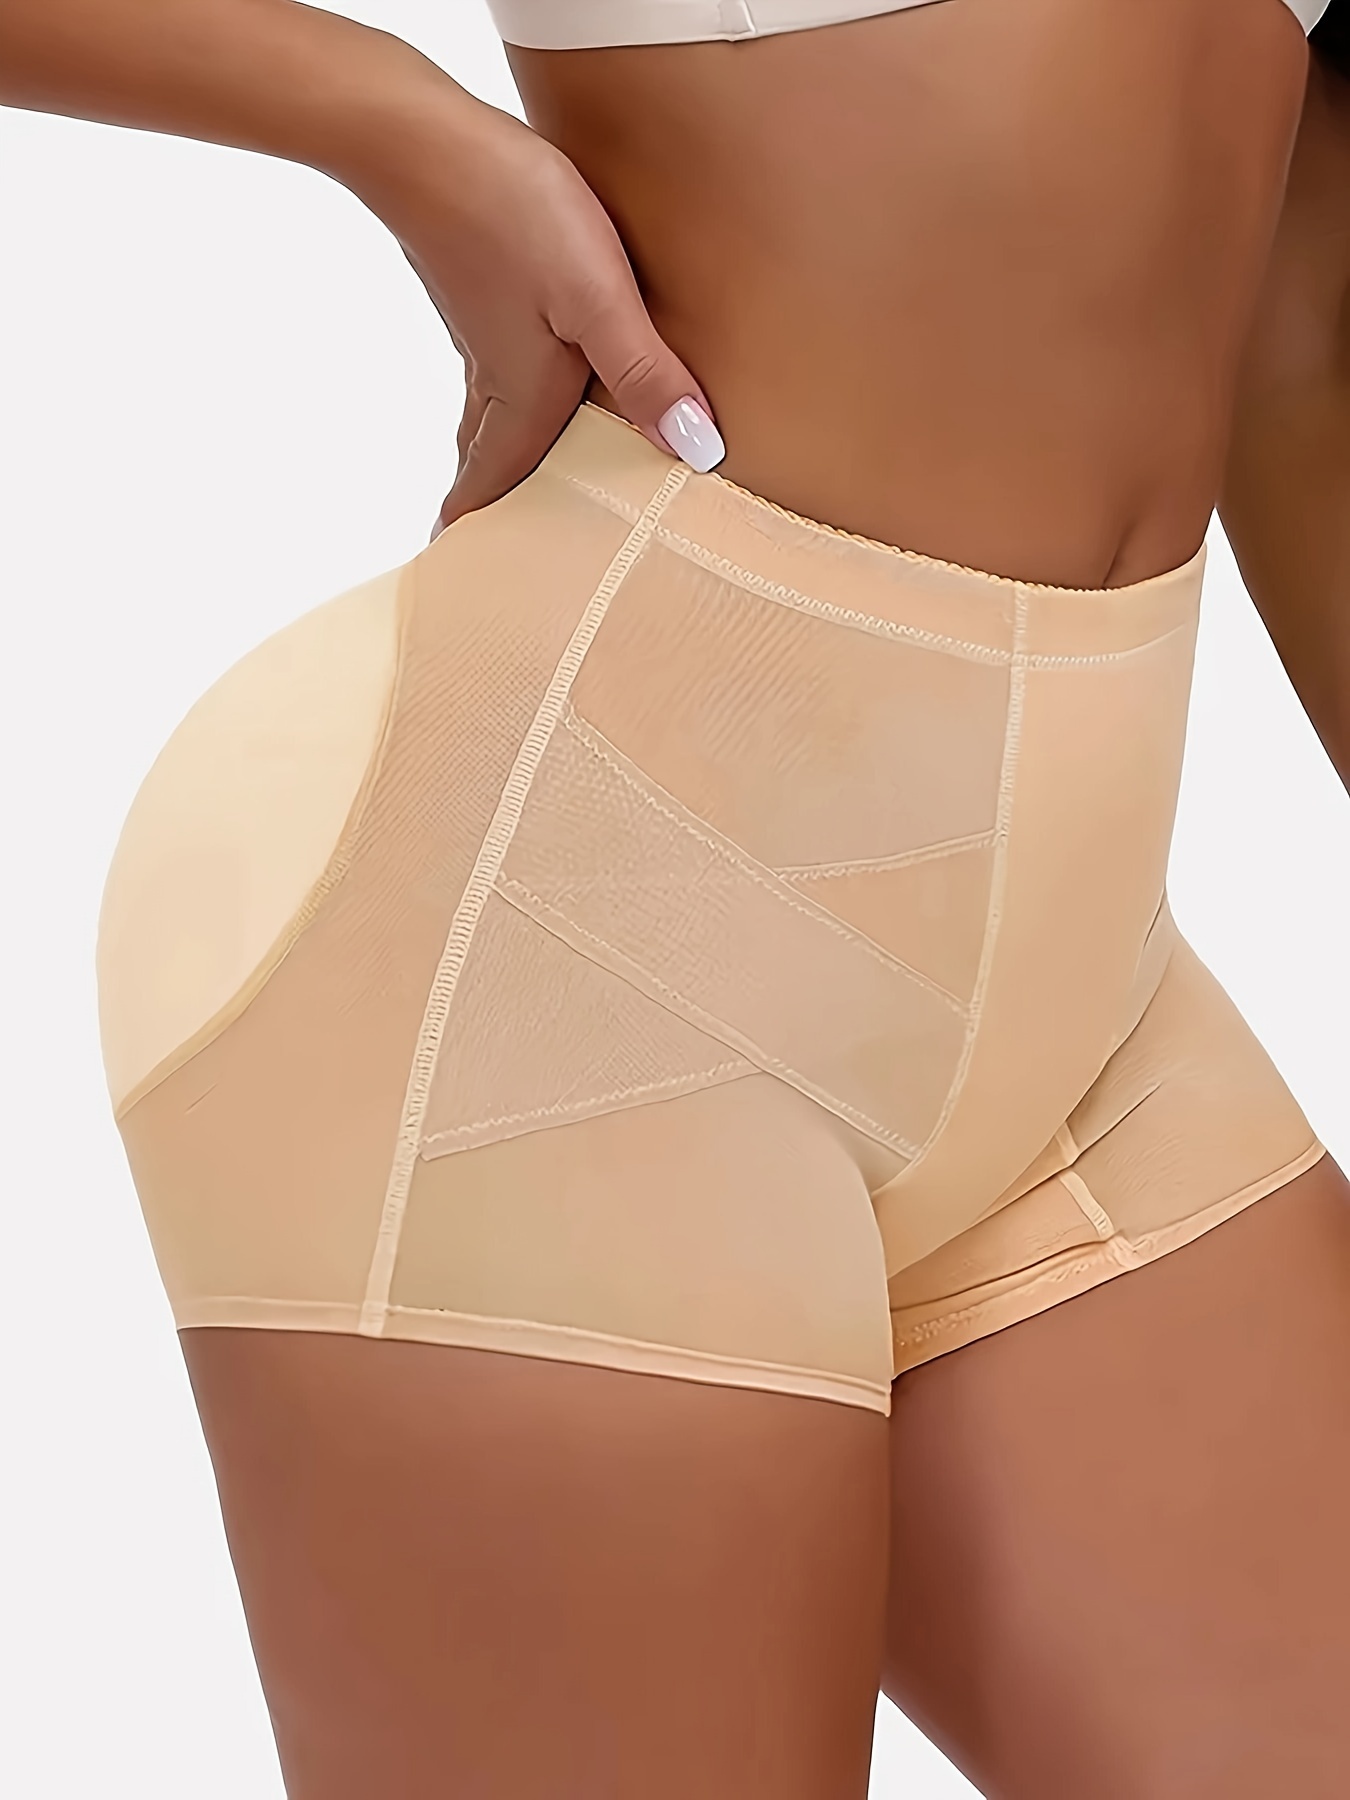 POP CLOSETS Women Butt Lifter Padded Lace Shapewear Thicker Butt